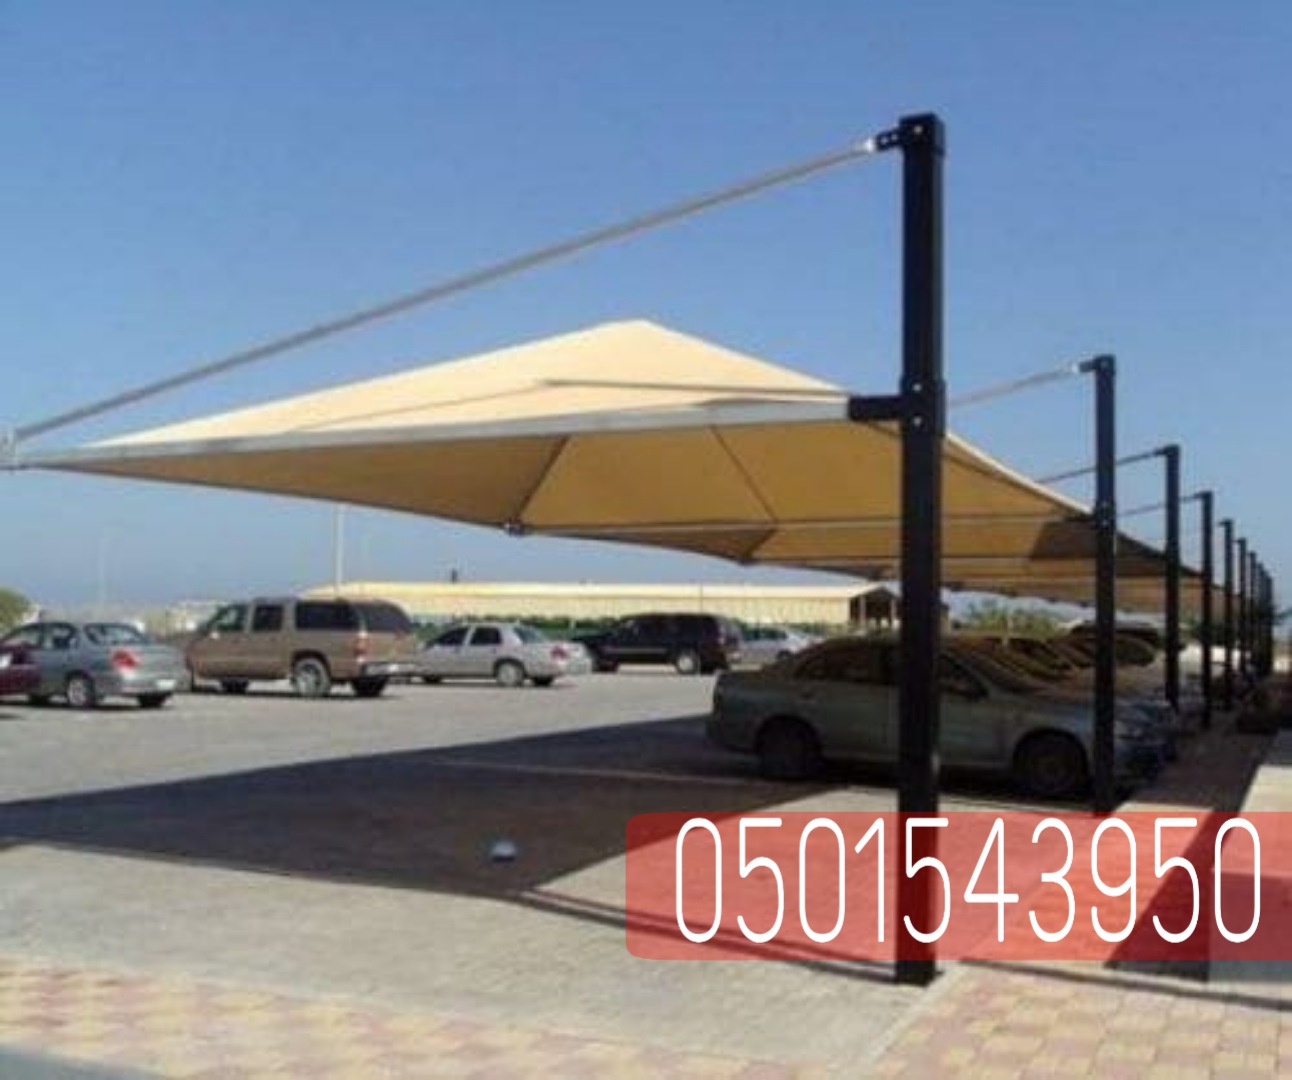 حداد مظلات سيارات في جدة , 0501543950  P_2238tphc45